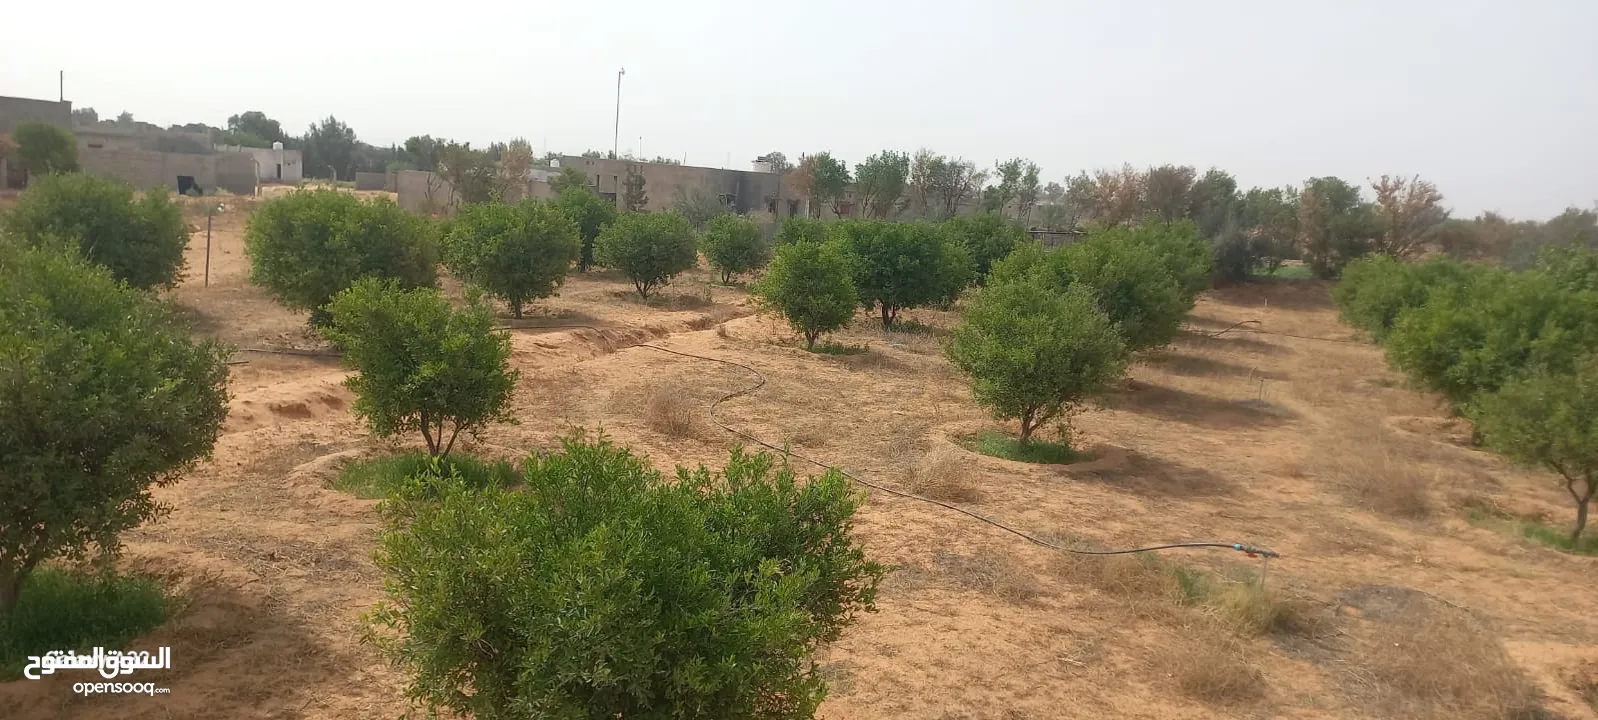 قطعة ارض للبيع، بالقرب من متلت القيو(زراعية او سكنية)